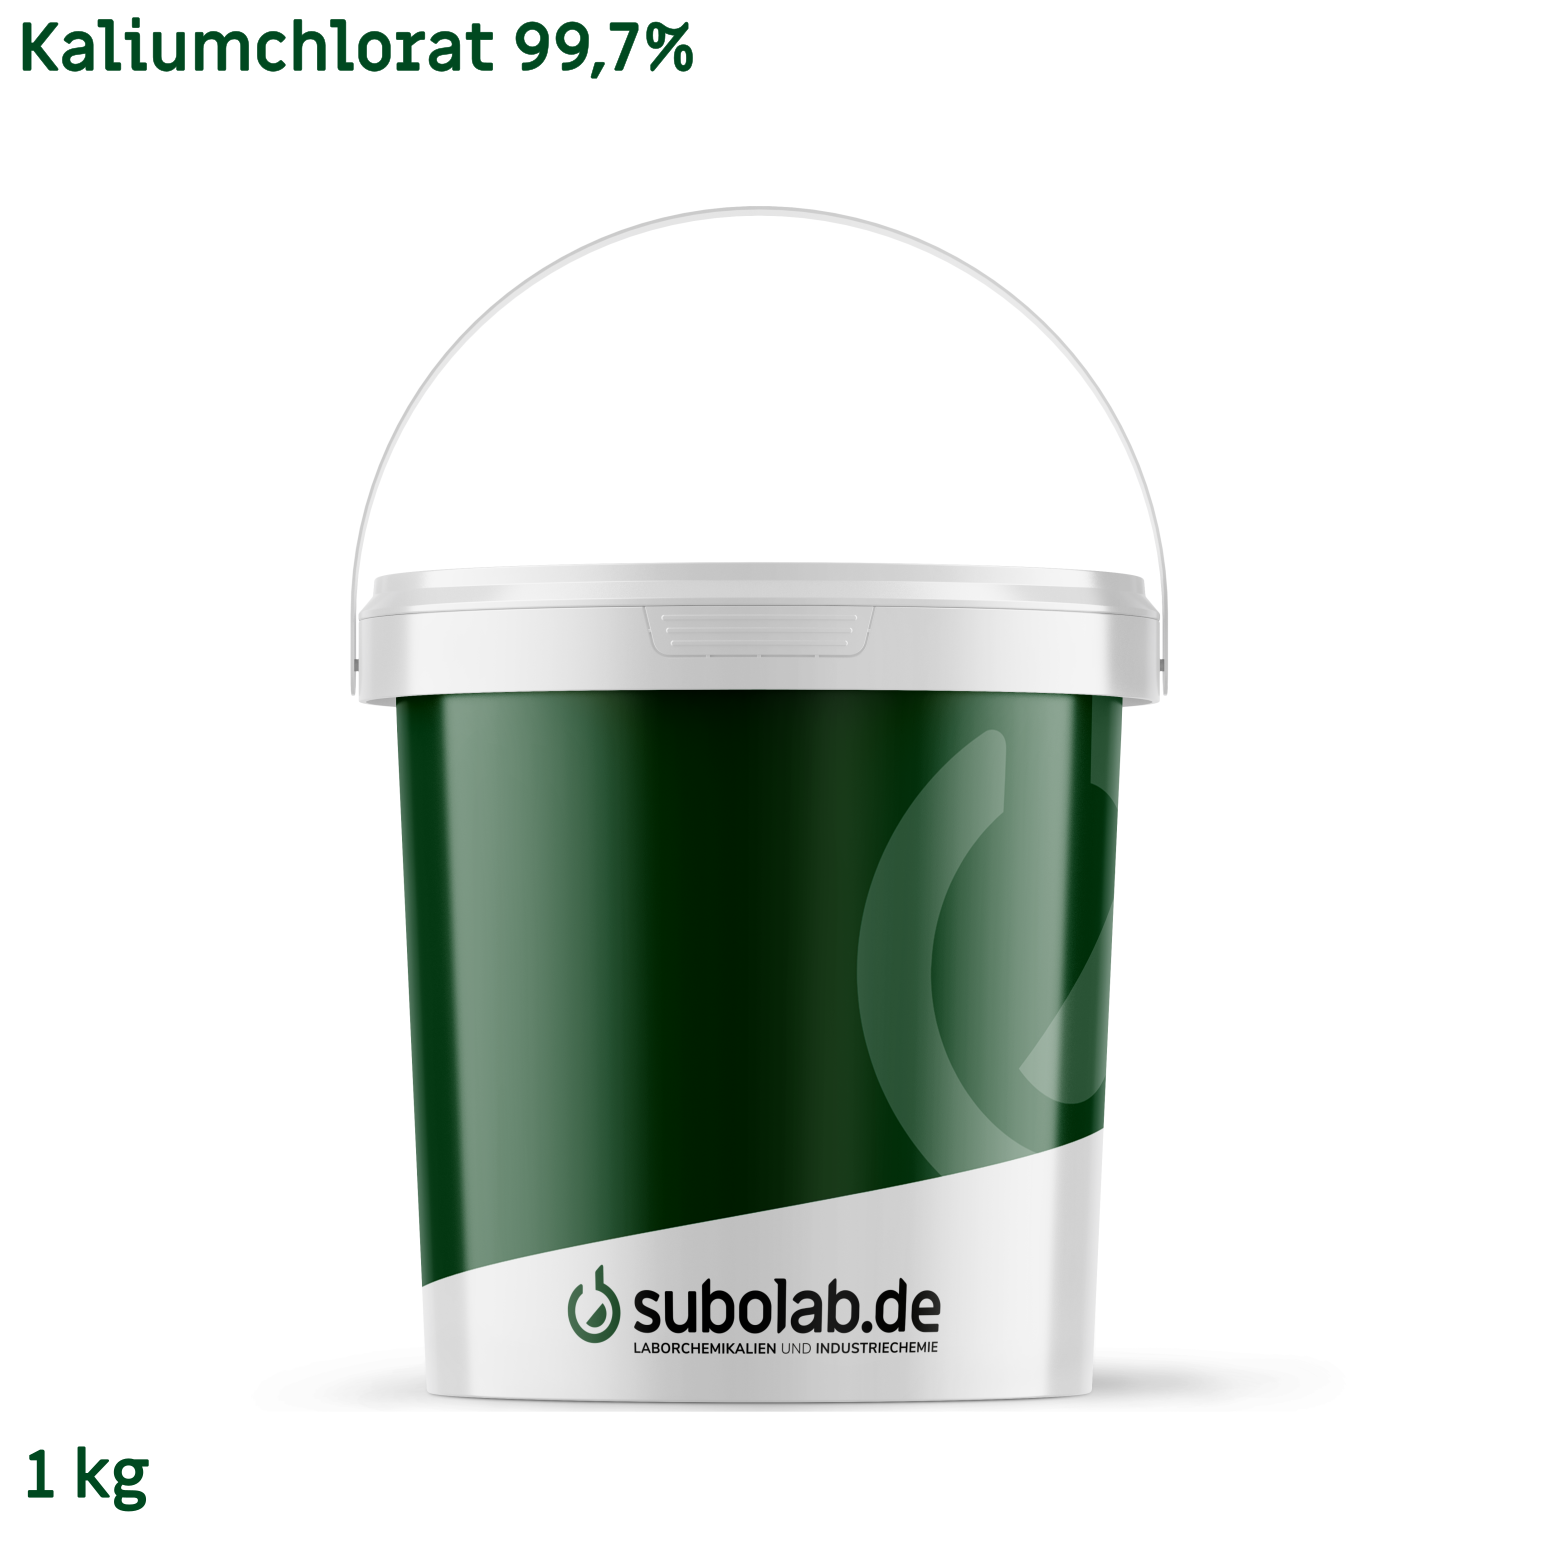 Bild von Kaliumchlorat 99,7% (1 kg)